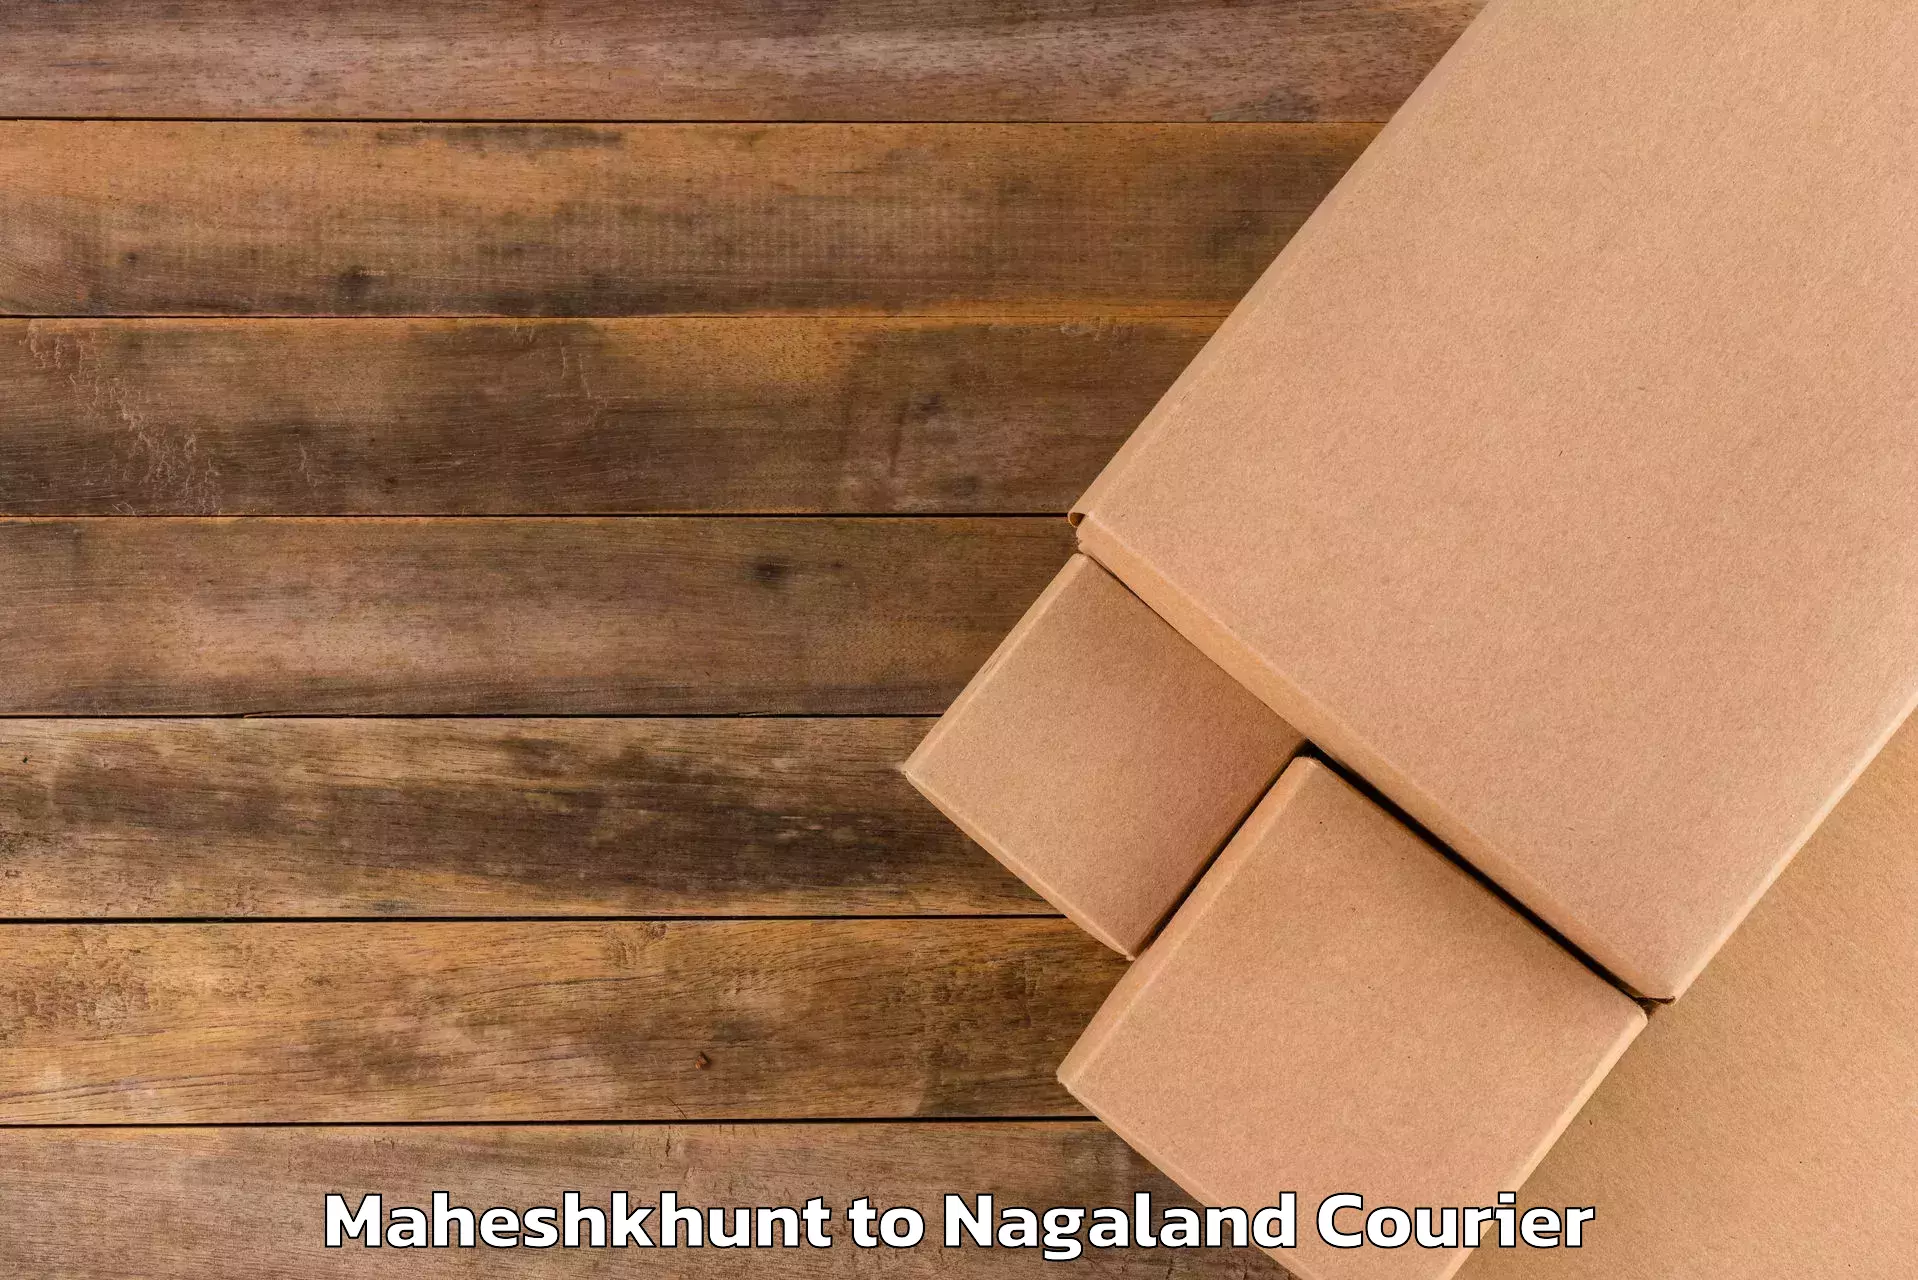 Luggage transit service Maheshkhunt to Nagaland